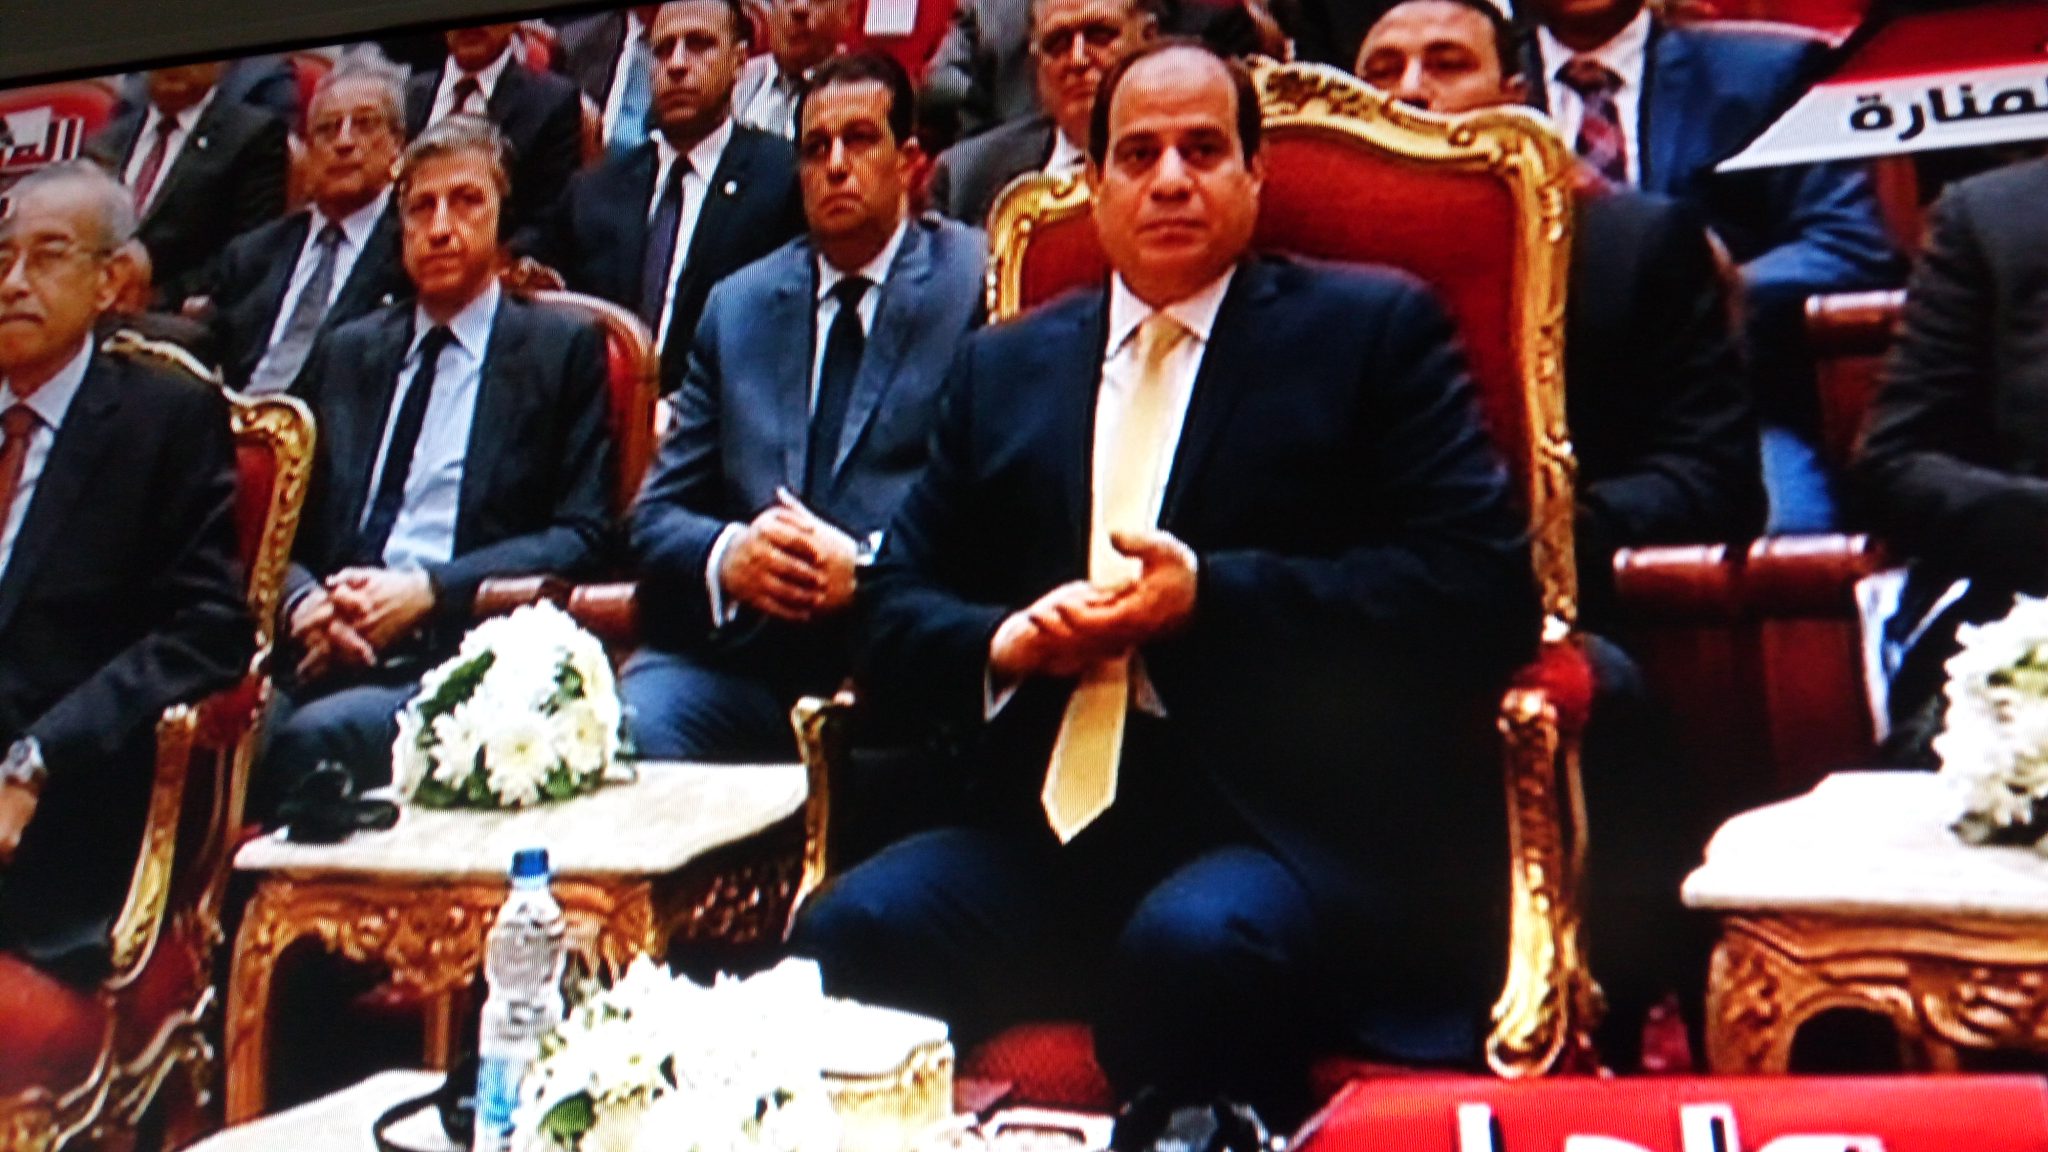   صور| سفير قبرص يجلس خلف الرئيس السيسي خلال مؤتمر إيجبس